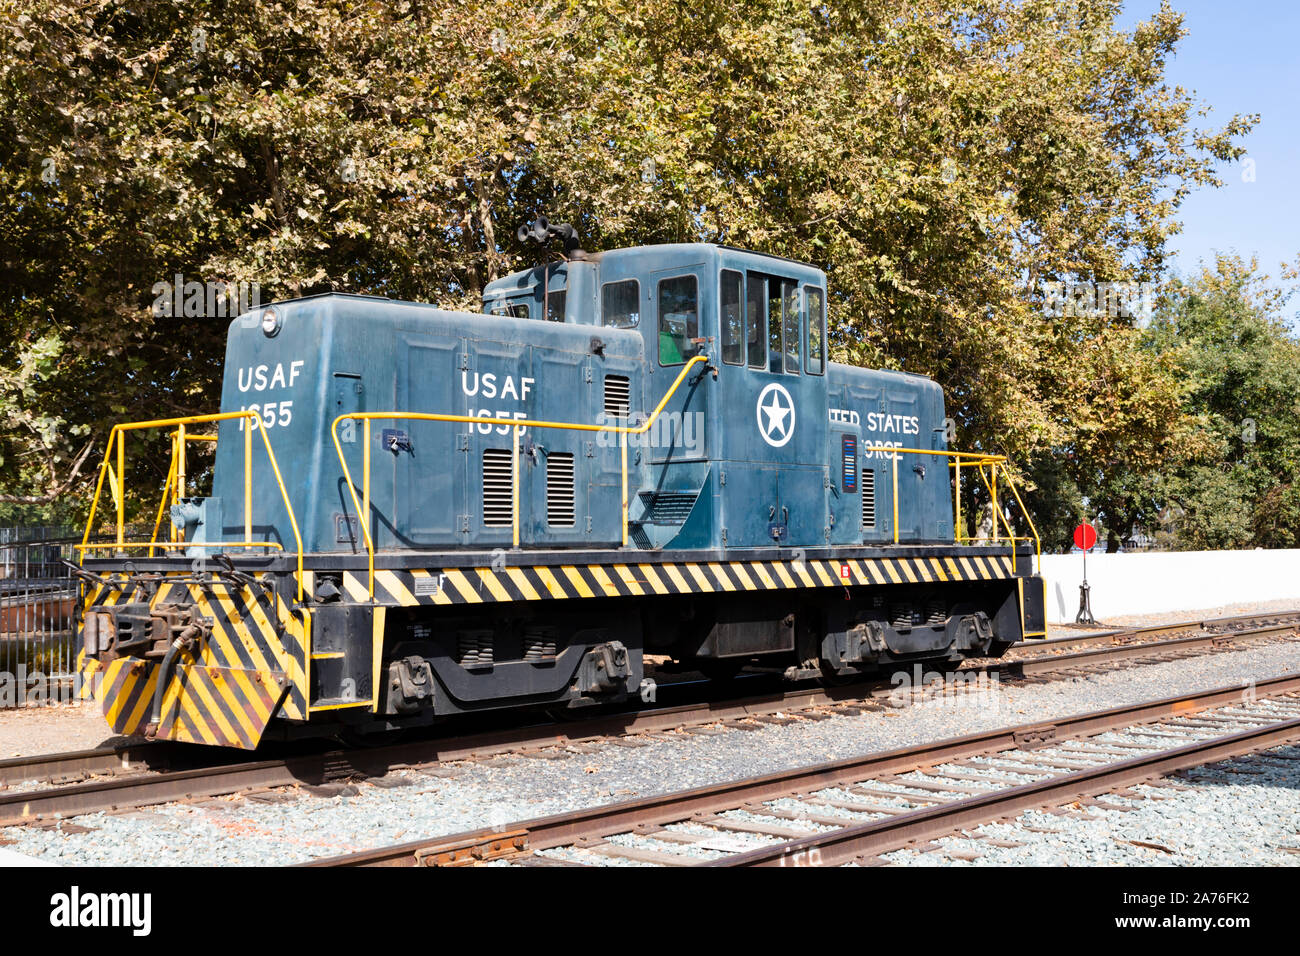 Dienstprogramm Lokomotive ex USAF 1655 an der California State Railroad Museum, Sacramento, die Hauptstadt des Staates Kalifornien, Vereinigte Staaten von Amerika. Stockfoto